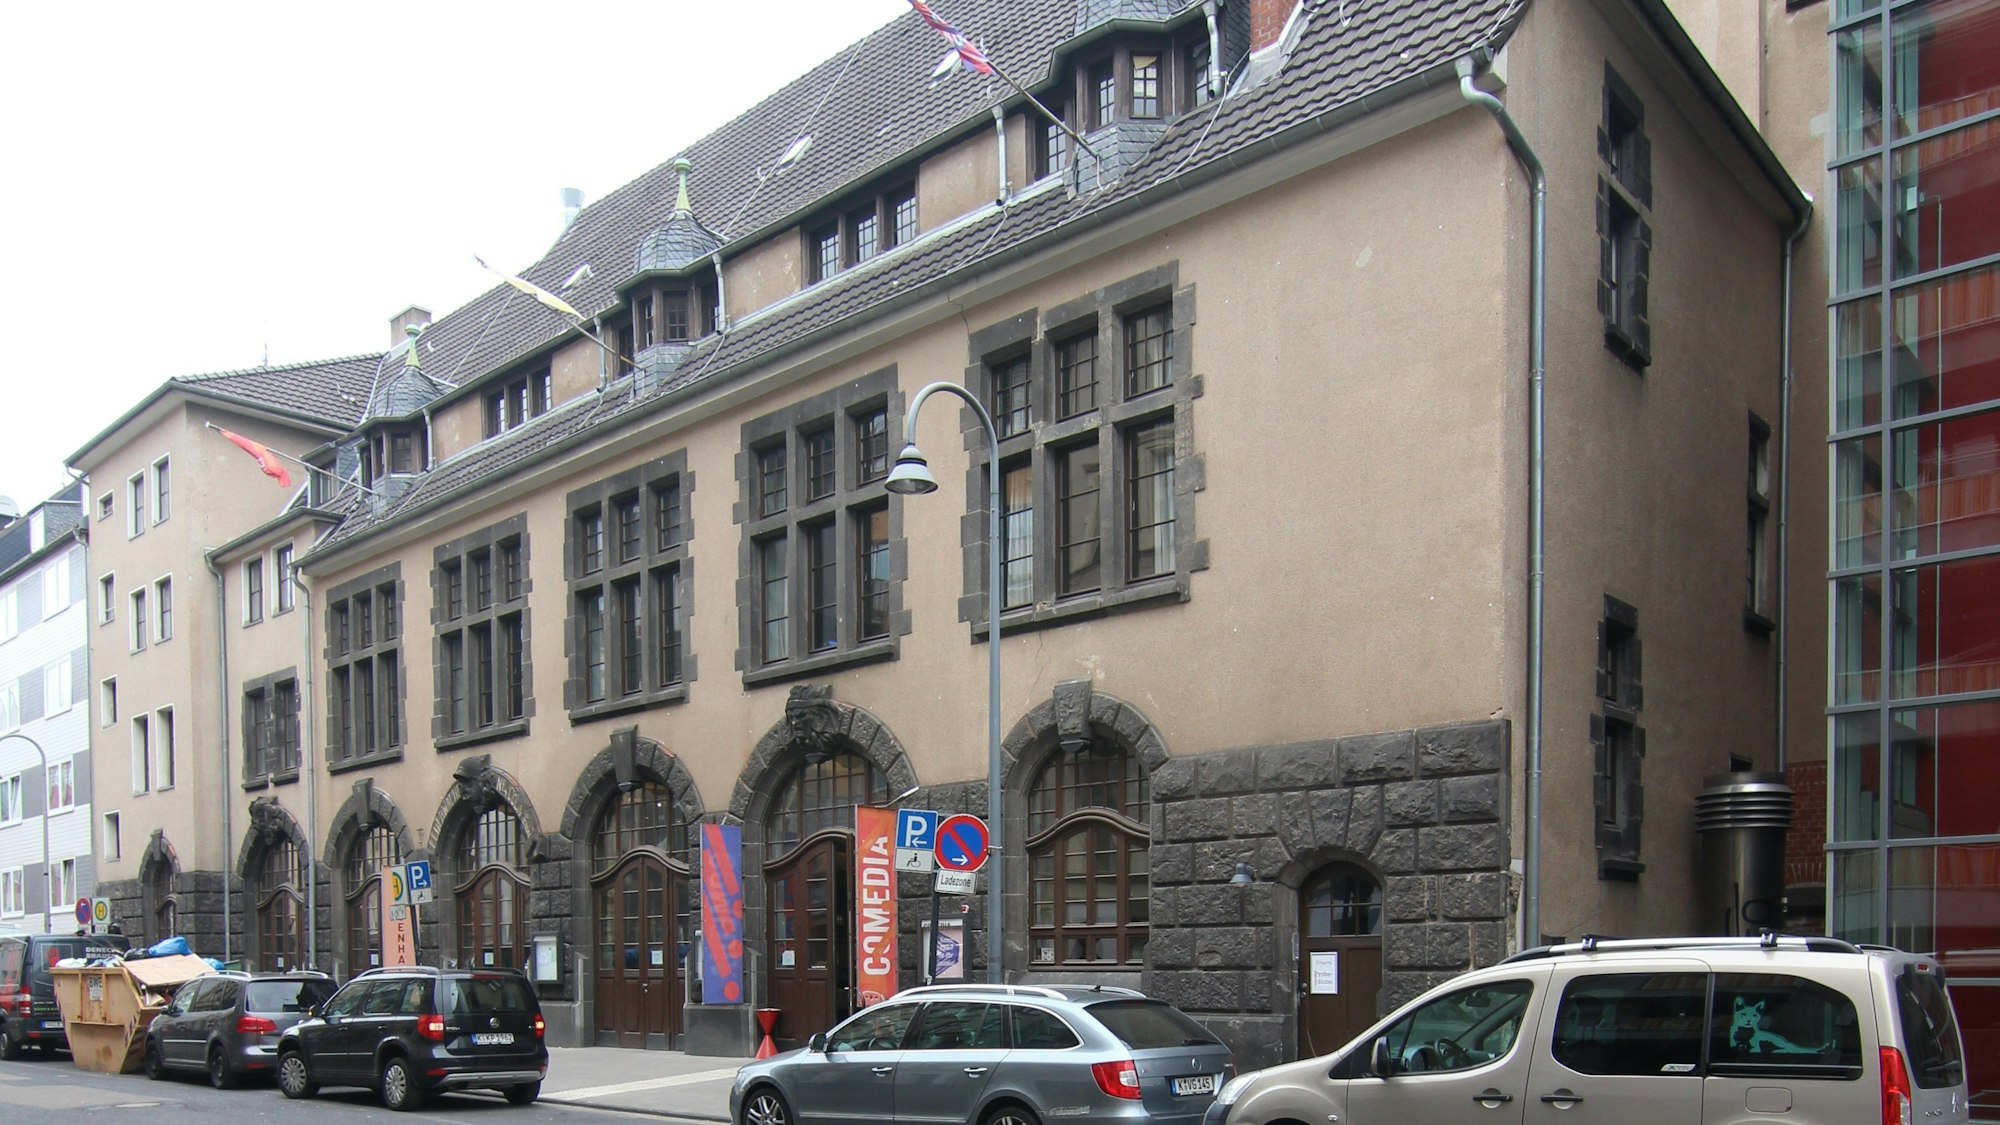 Auf dem Bild zu sehen ist die ehemalige Feuerwache, die heute das Comedia-Theater beherbergt. Unten am Gebäude und an den Fenstern sieht man noch eine alte, graue Steinfassade, der Rest der Wand ist bräunlich.